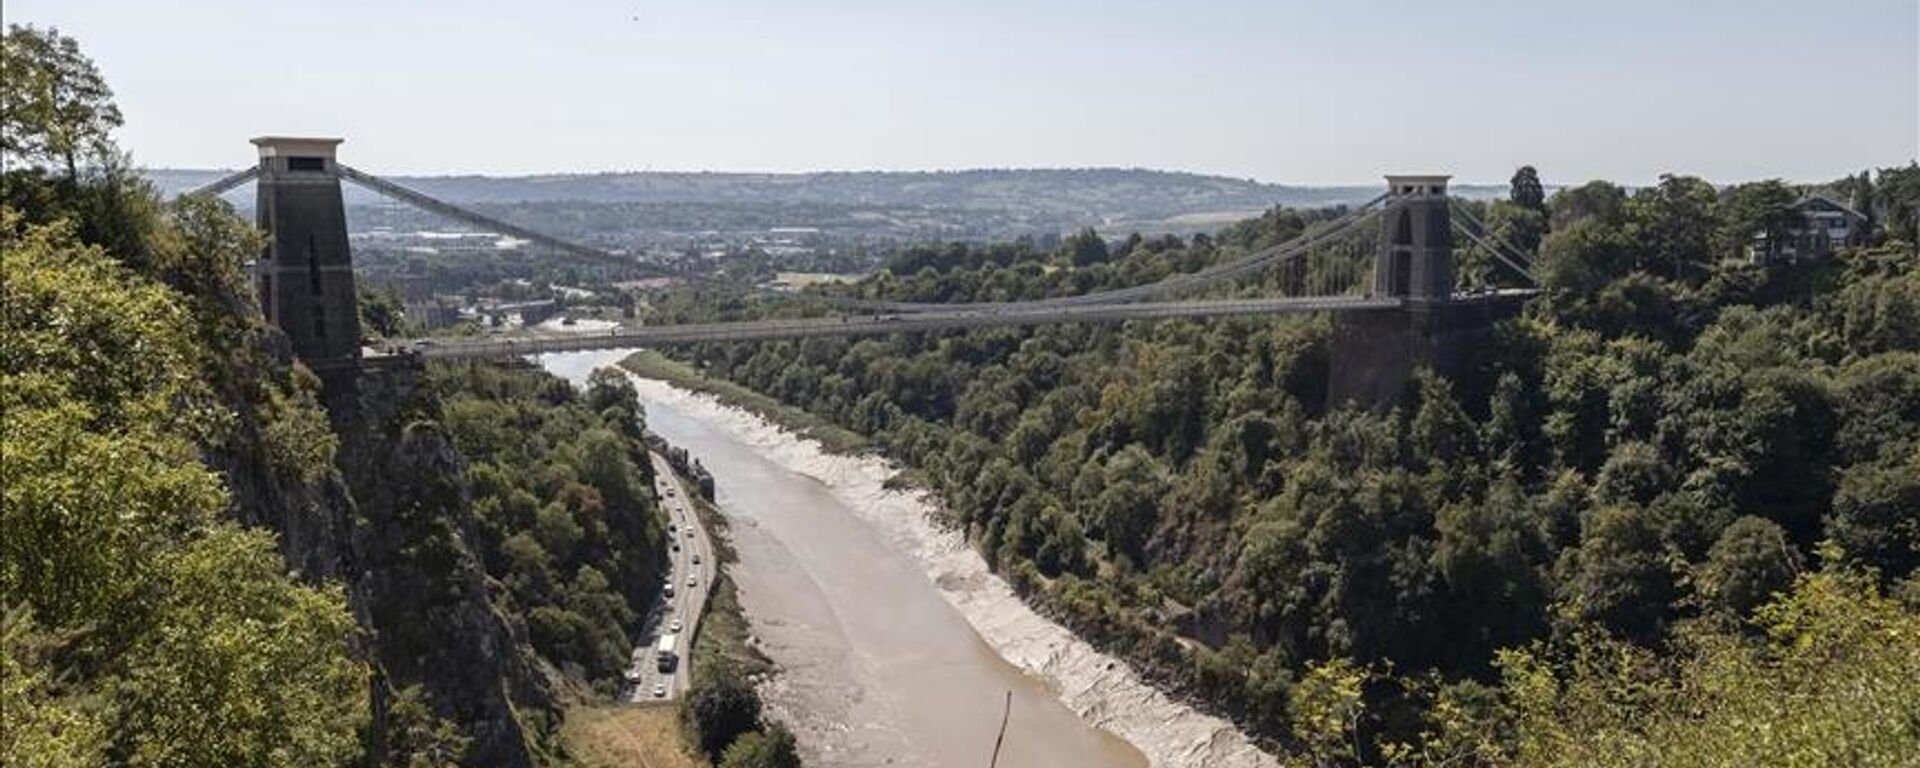 İngiltere’de Aşağı Avon, Bristol Avon isimleriyle de bilinen, ülkenin önemli su kaynaklarından yaklaşık 120 kilometrelik Avon Nehri'nin pek çok noktasında suyunun neredeyse tamamen kurumaya yüz tuttuğu görüldü. - Sputnik Türkiye, 1920, 13.08.2022